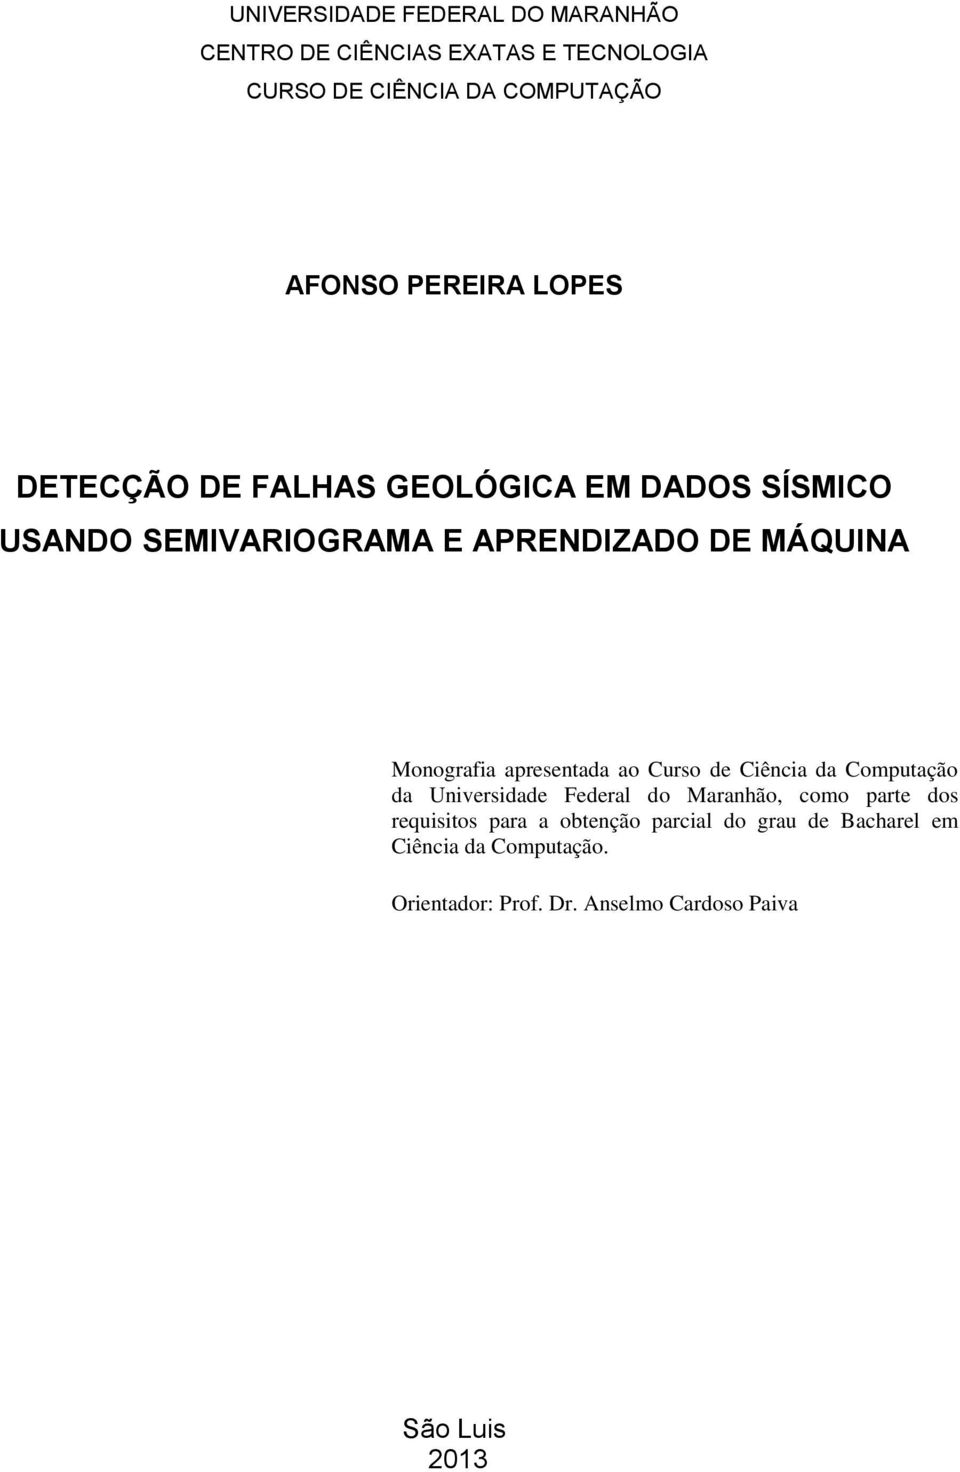 Monografia apresentada ao Curso de Ciência da Computação da Universidade Federal do Maranhão, como parte dos